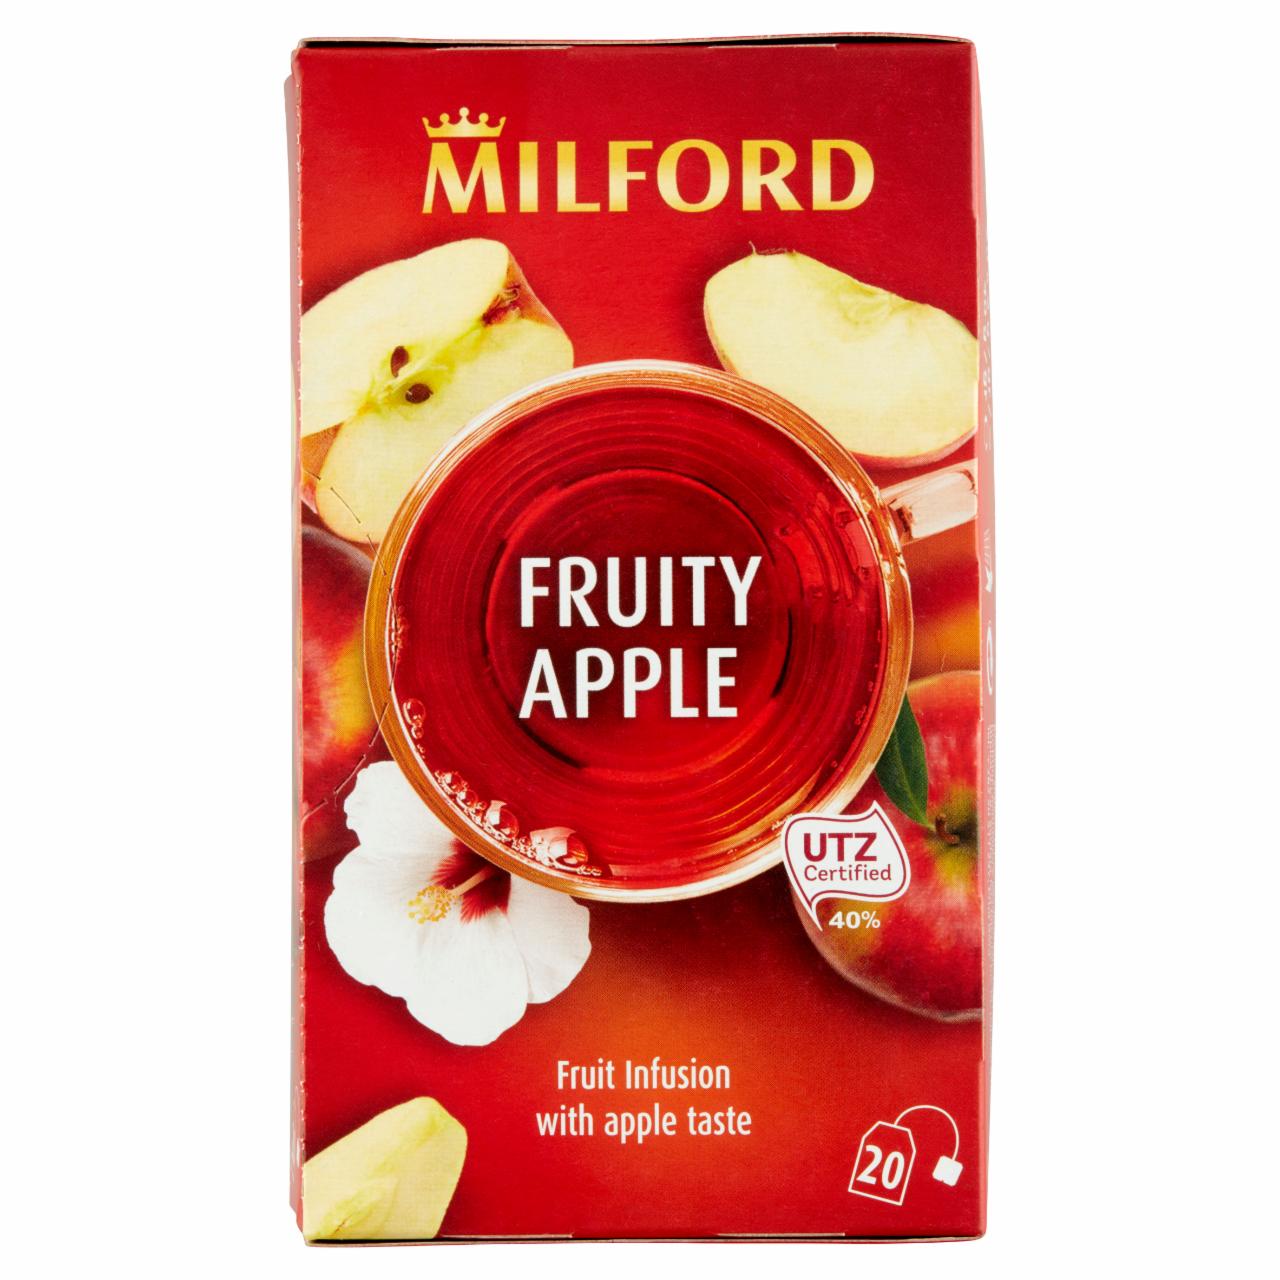 Képek - Milford Fruity Apple almás gyümölcstea 20 filter 40 g